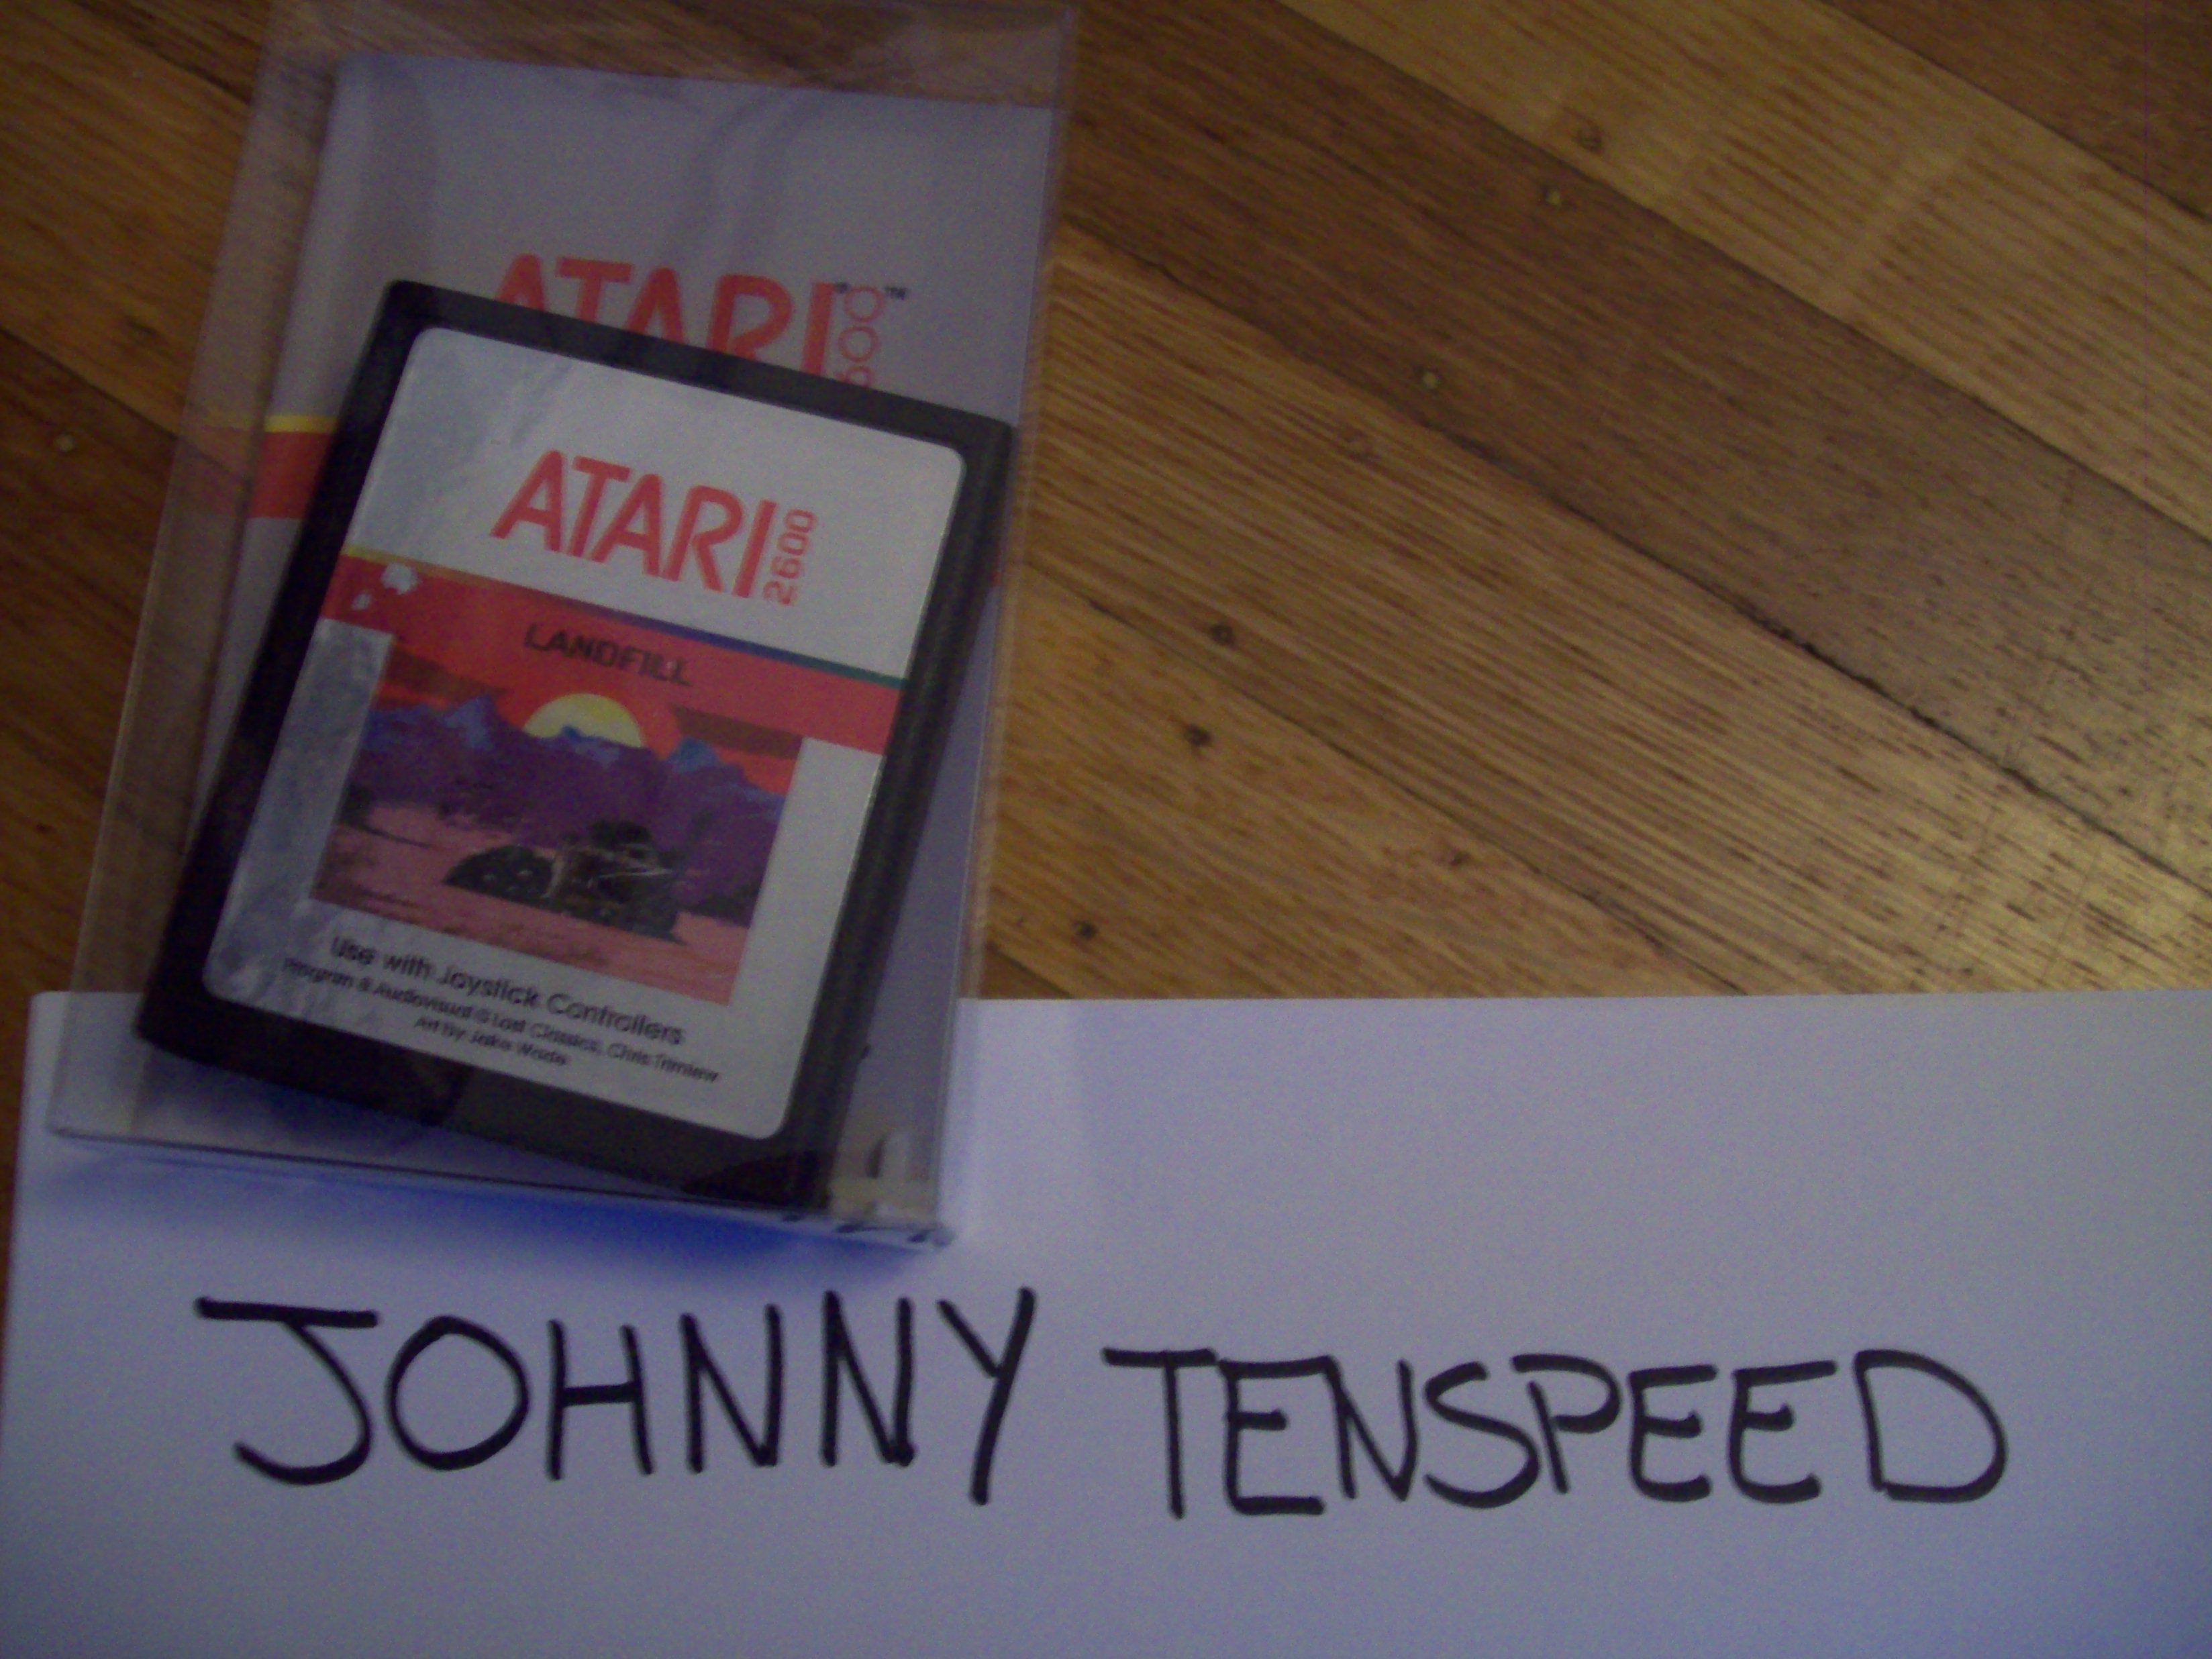 JohnnyTenspeed: Landfill (Atari 2600) 74,440 points on 2015-01-17 09:55:17